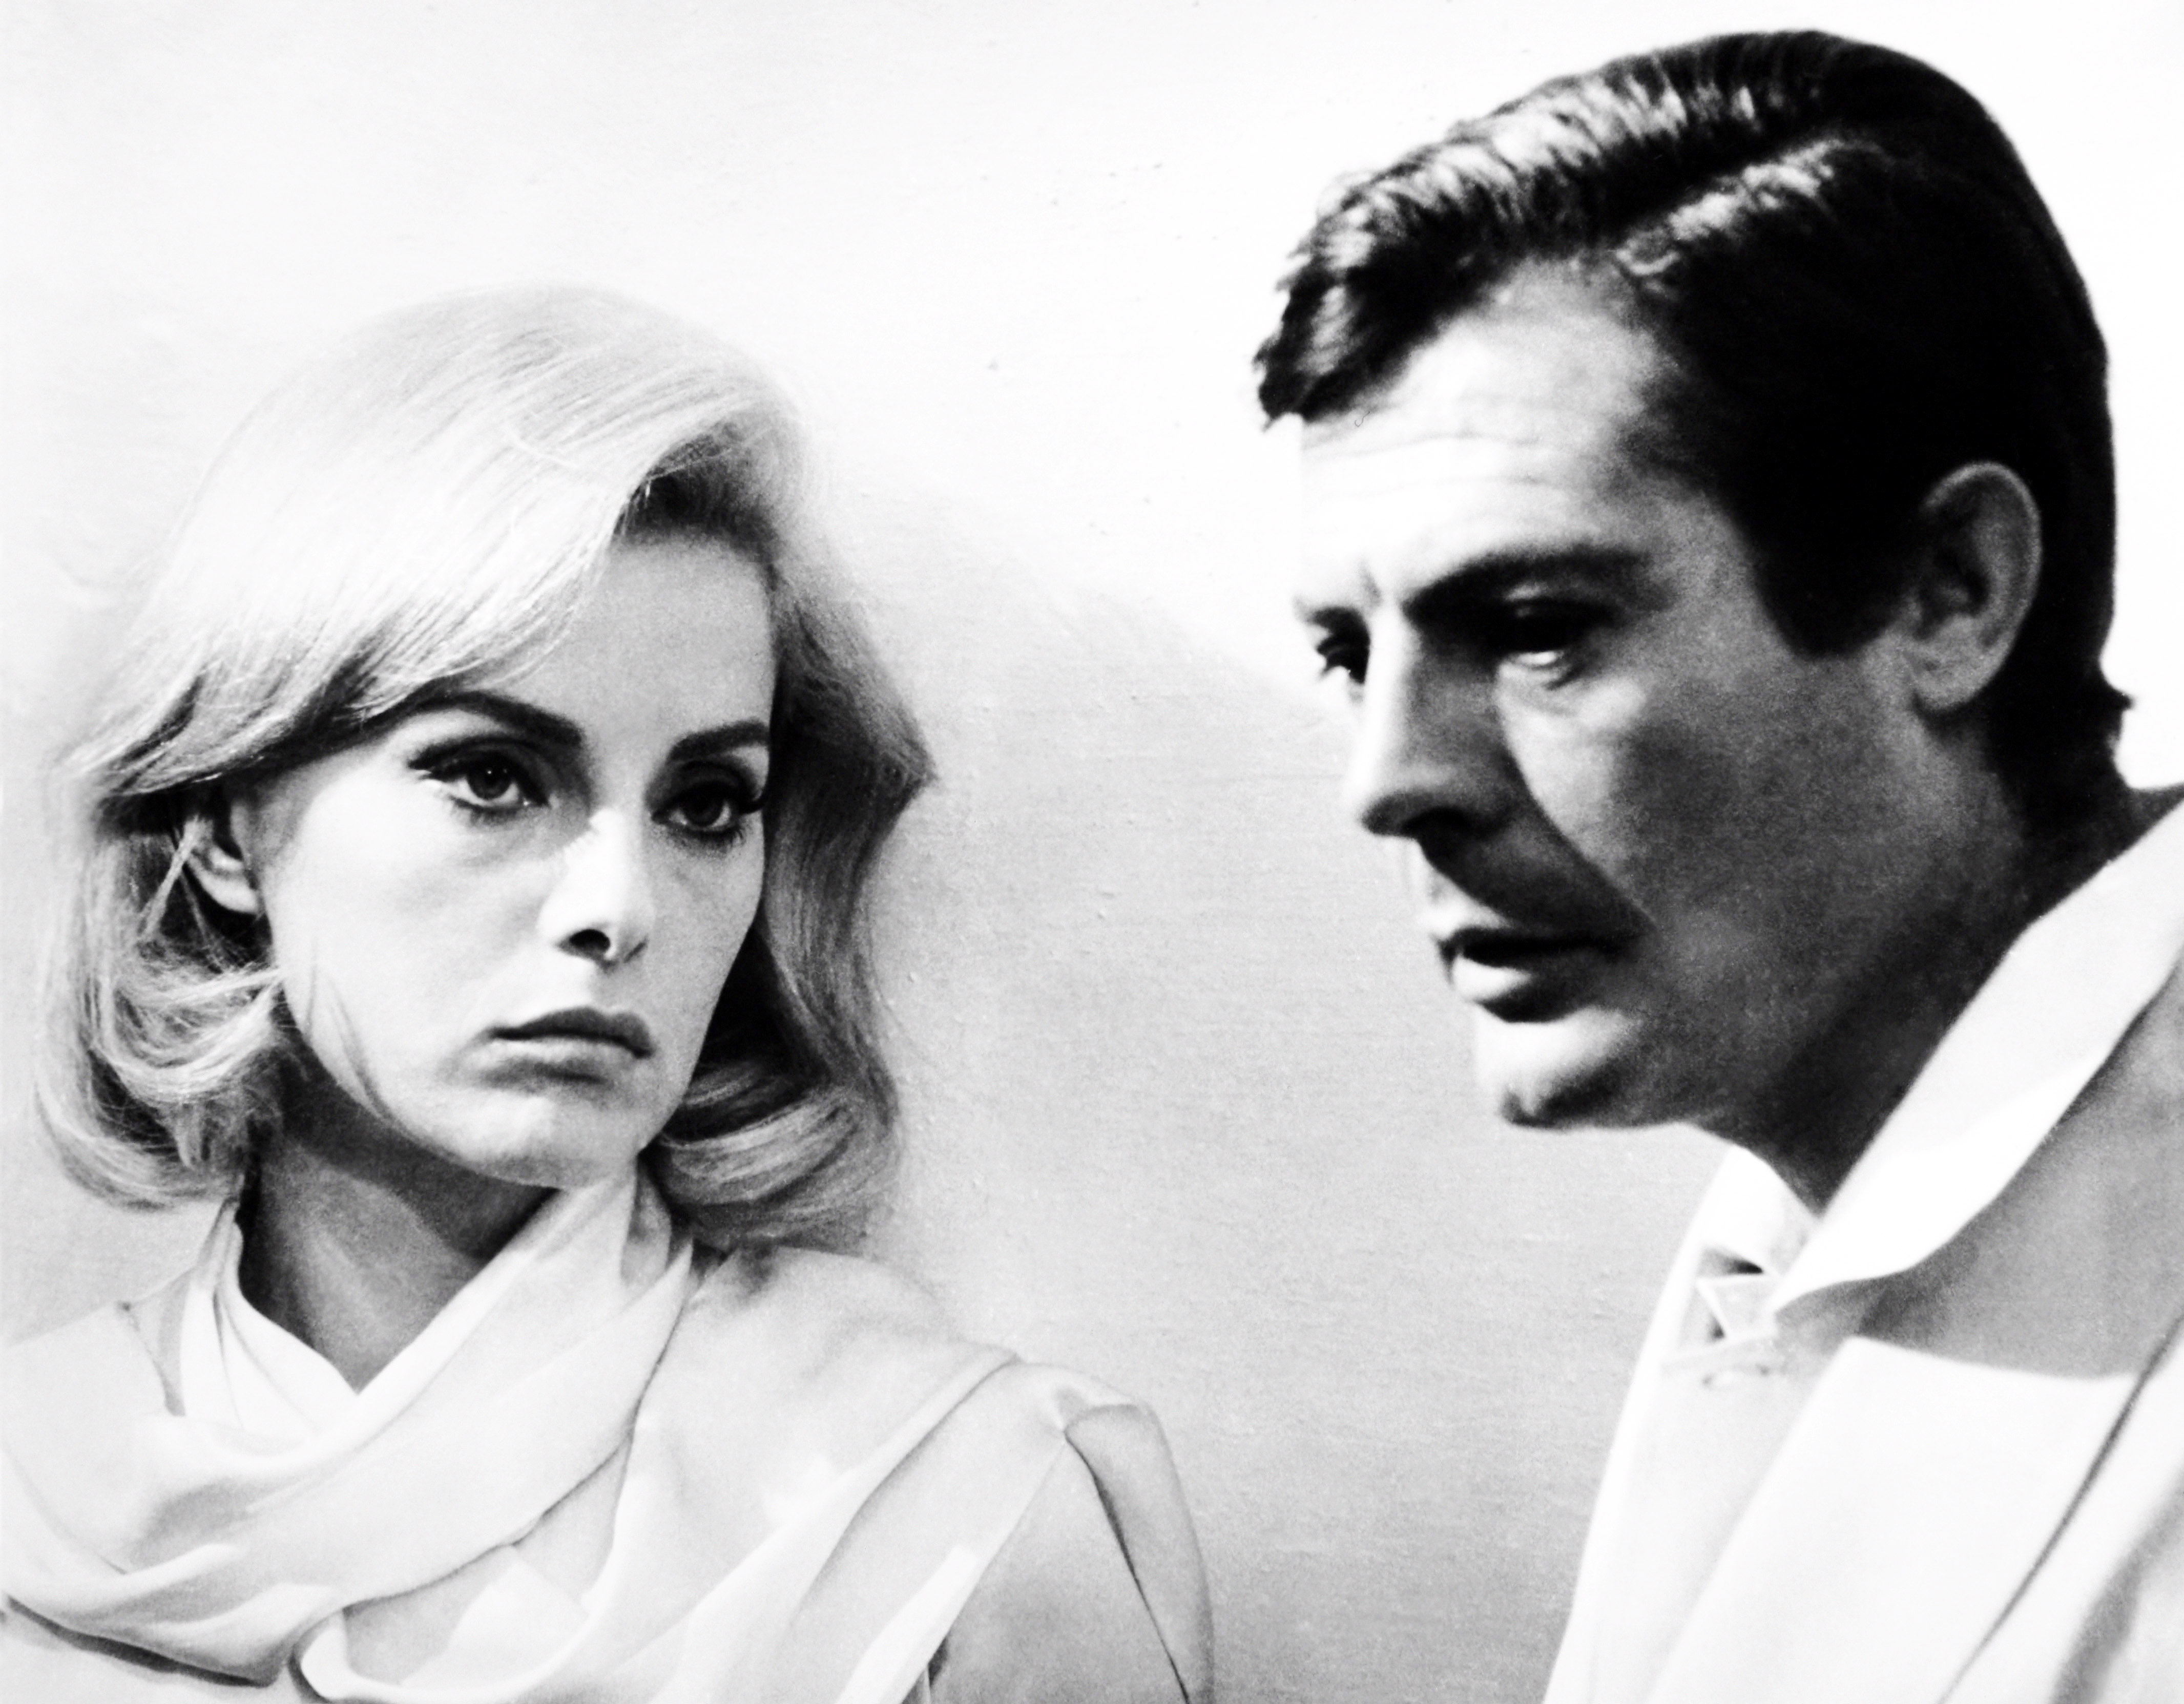 Con Marcello Mastroianni in una scena del film "Casanova 70" del 1965